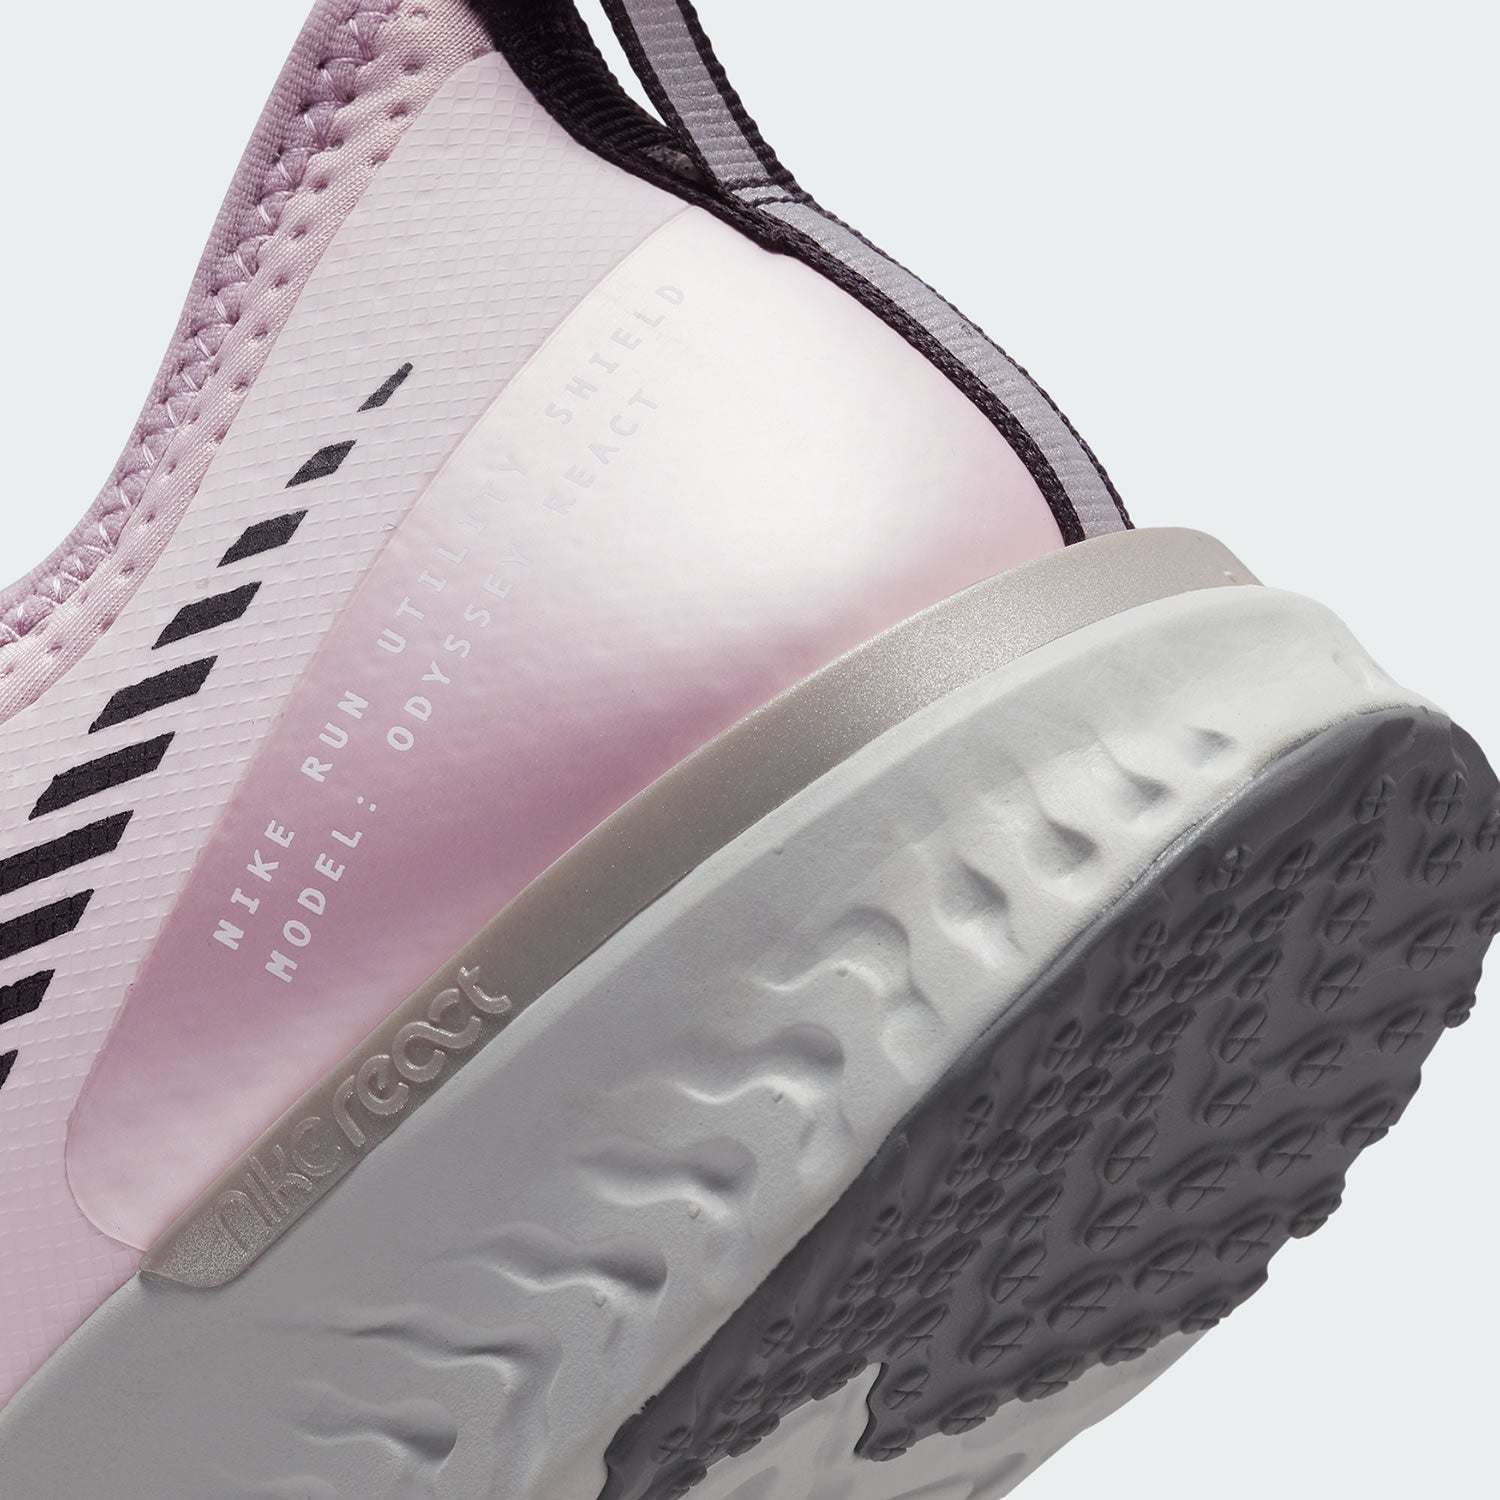 tradesports.co.uk Nike Odyssey React 2 Shield Women's Shoes BQ1672 601